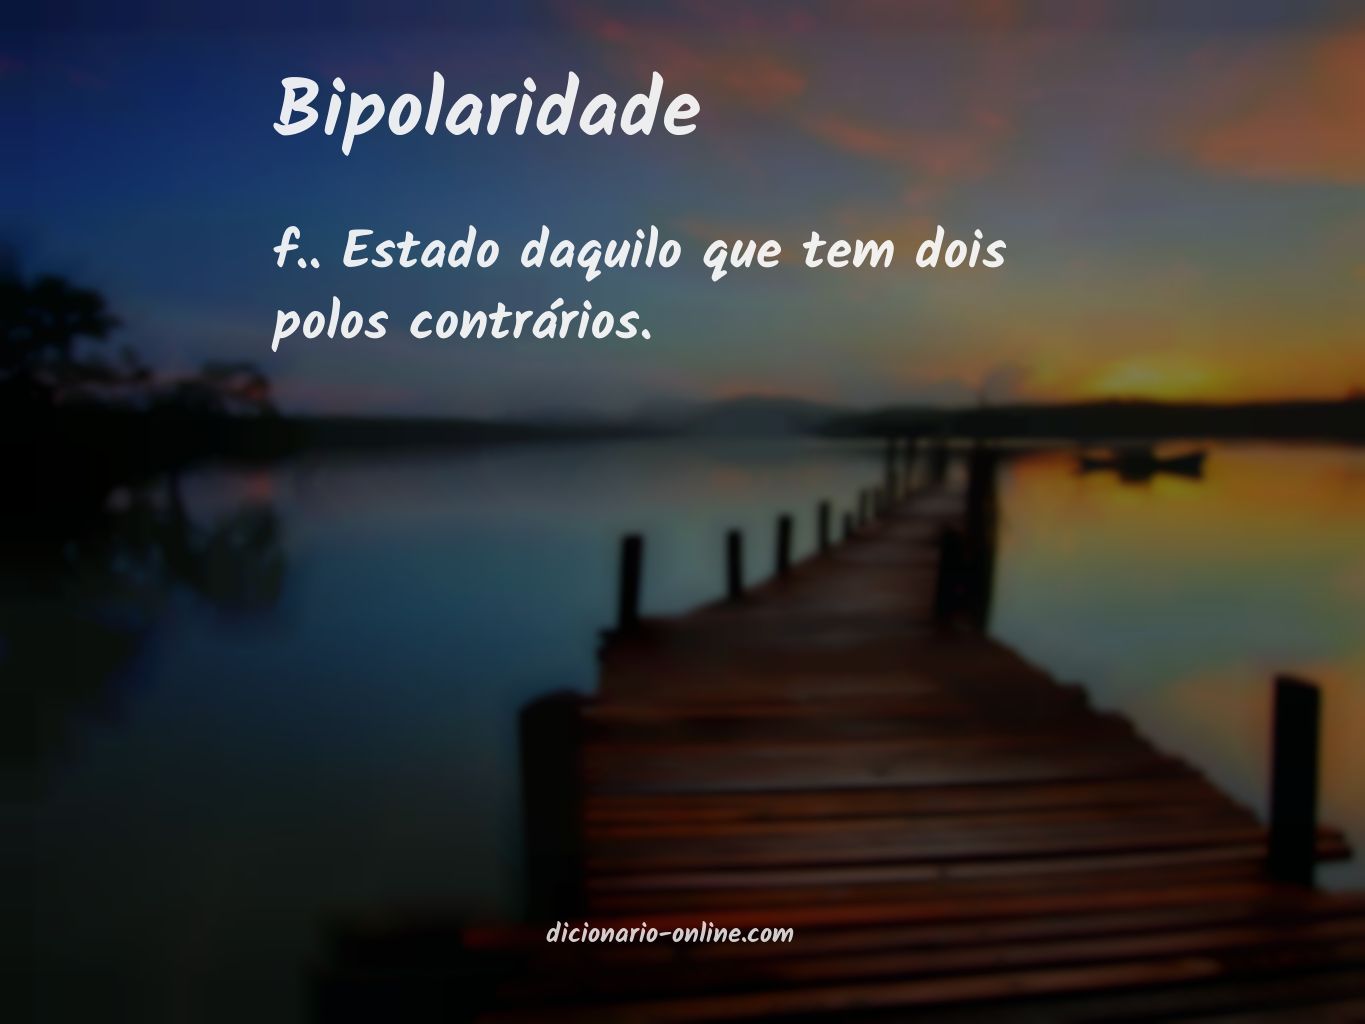 Significado de bipolaridade